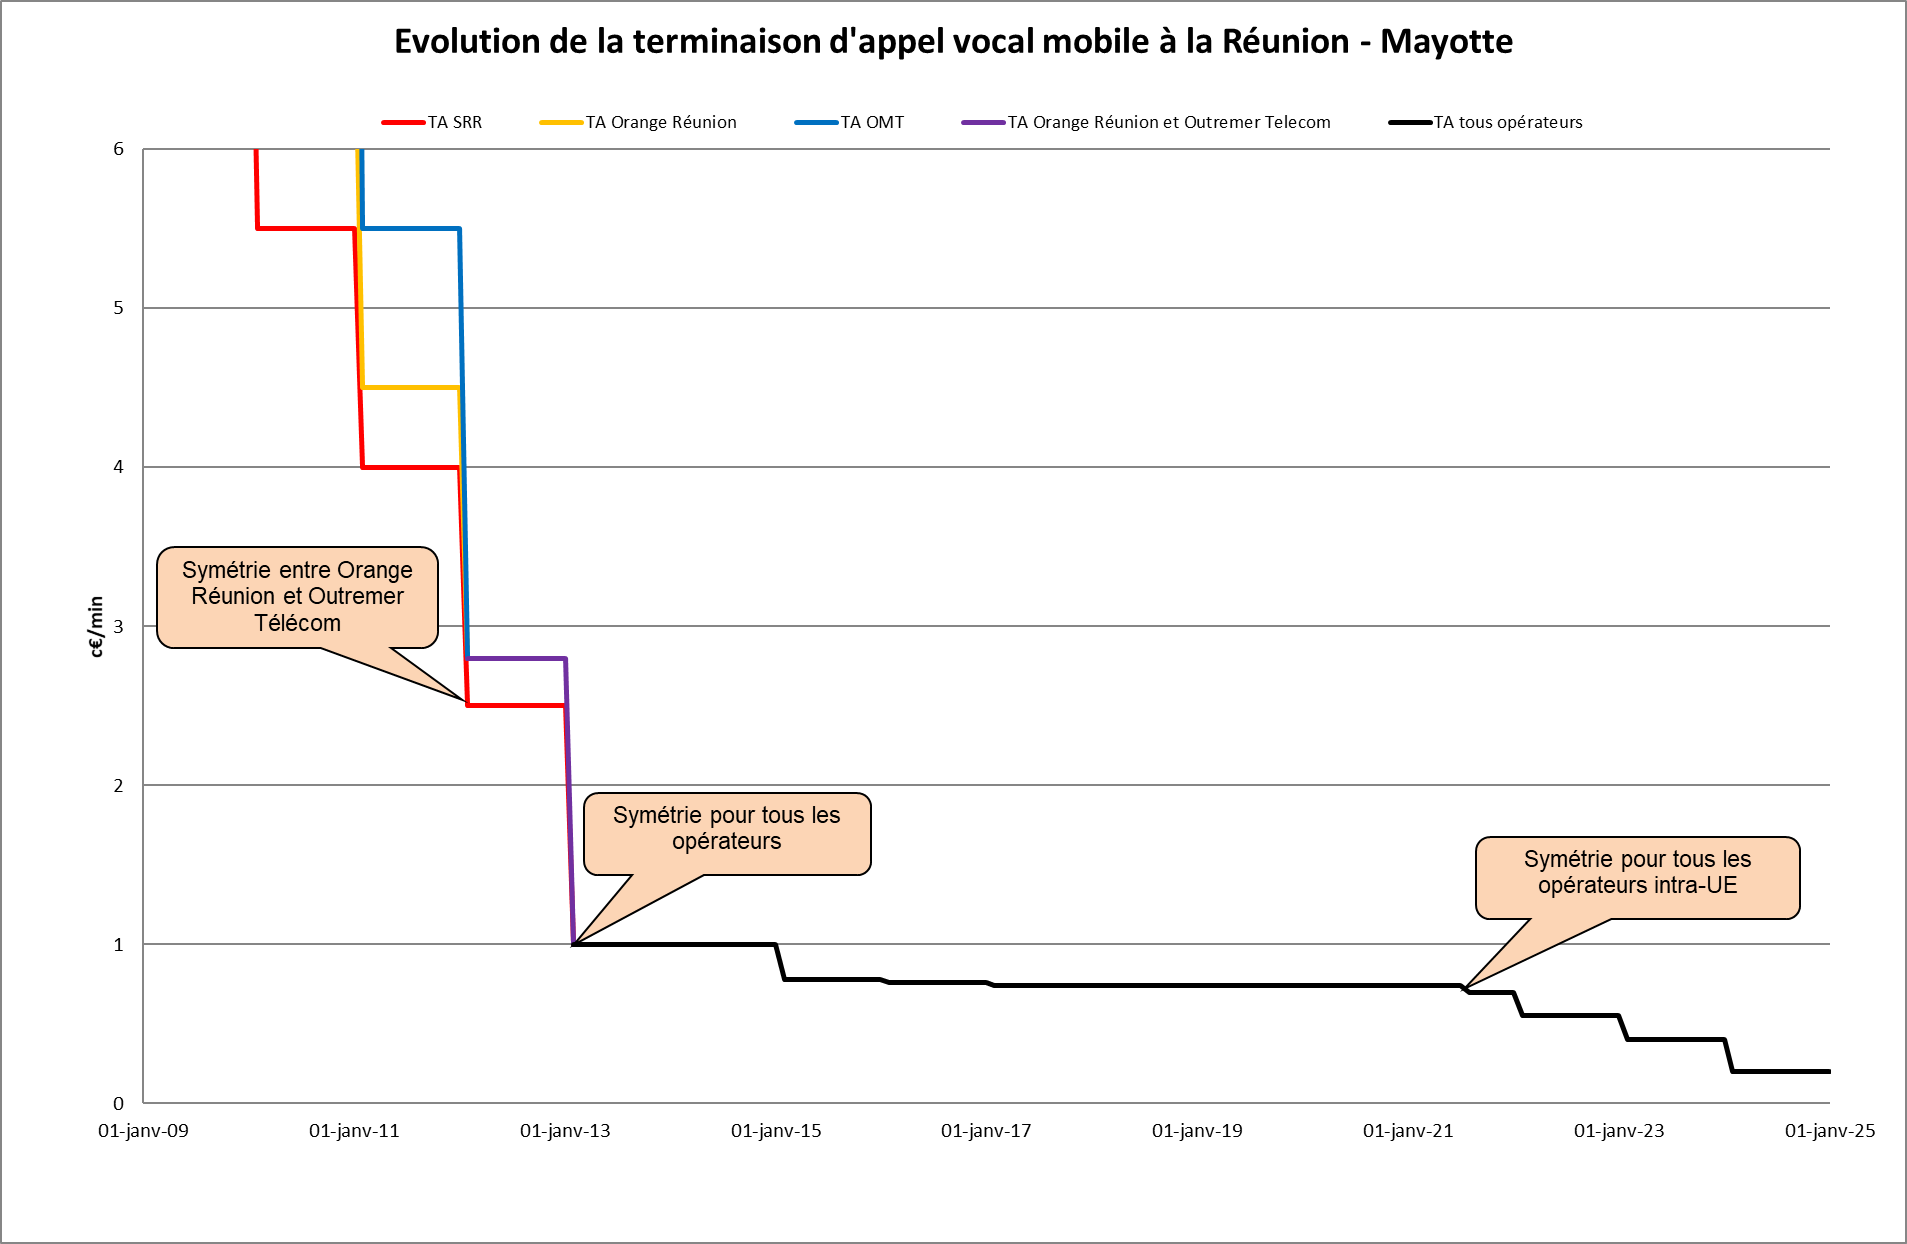 Evolution de la terminaison d’appel vocal mobile par opérateur et pour la Réunion et Mayotte